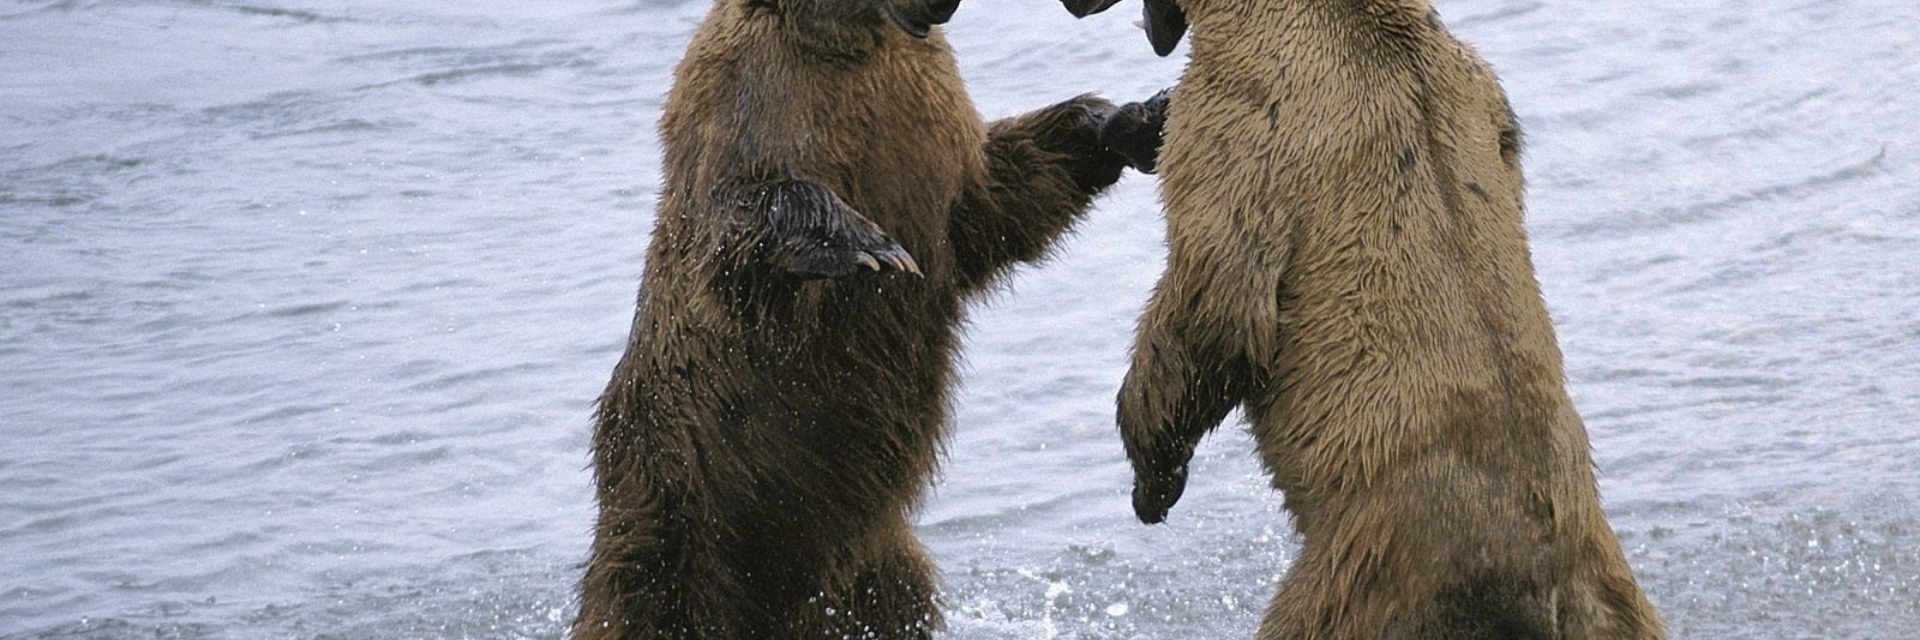 Bears 2 shop. Два медведя обнимаются в воде. Два медведя дают друг другу пять.